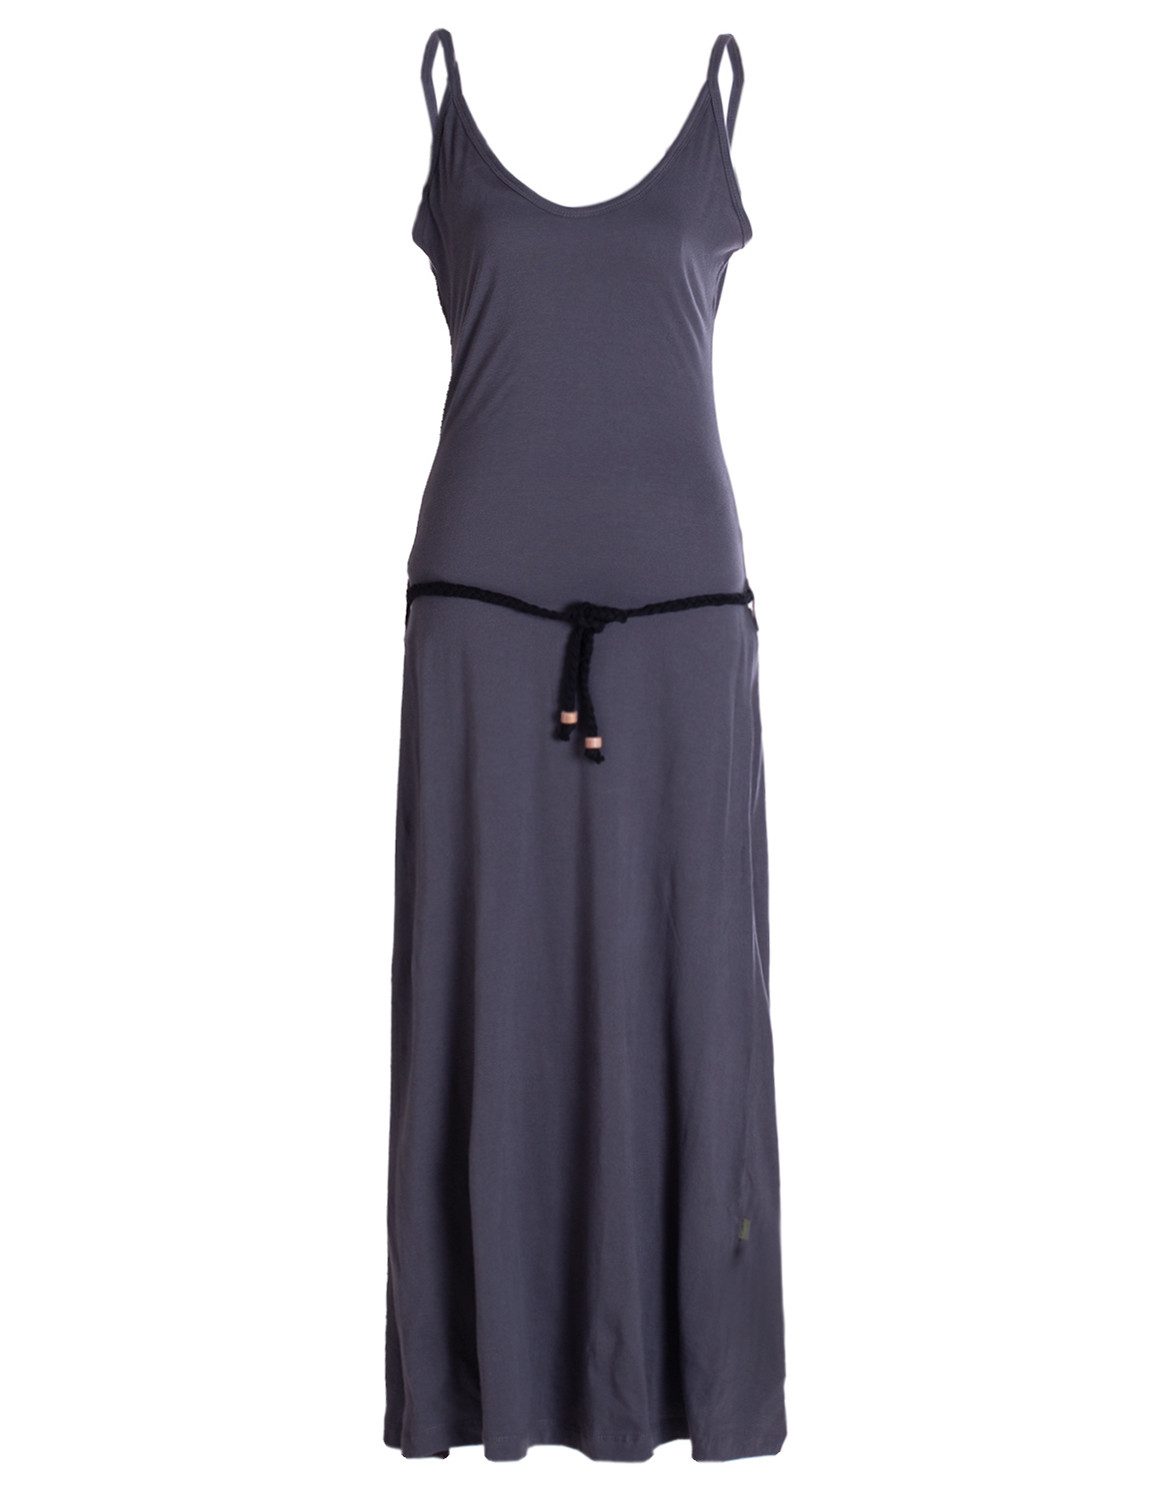 Vishes Sommerkleid Langes Einfaches Damen Träger Sommer-Kleid,Ökologisch nachhaltig Ethno, Goa, Hippie Style